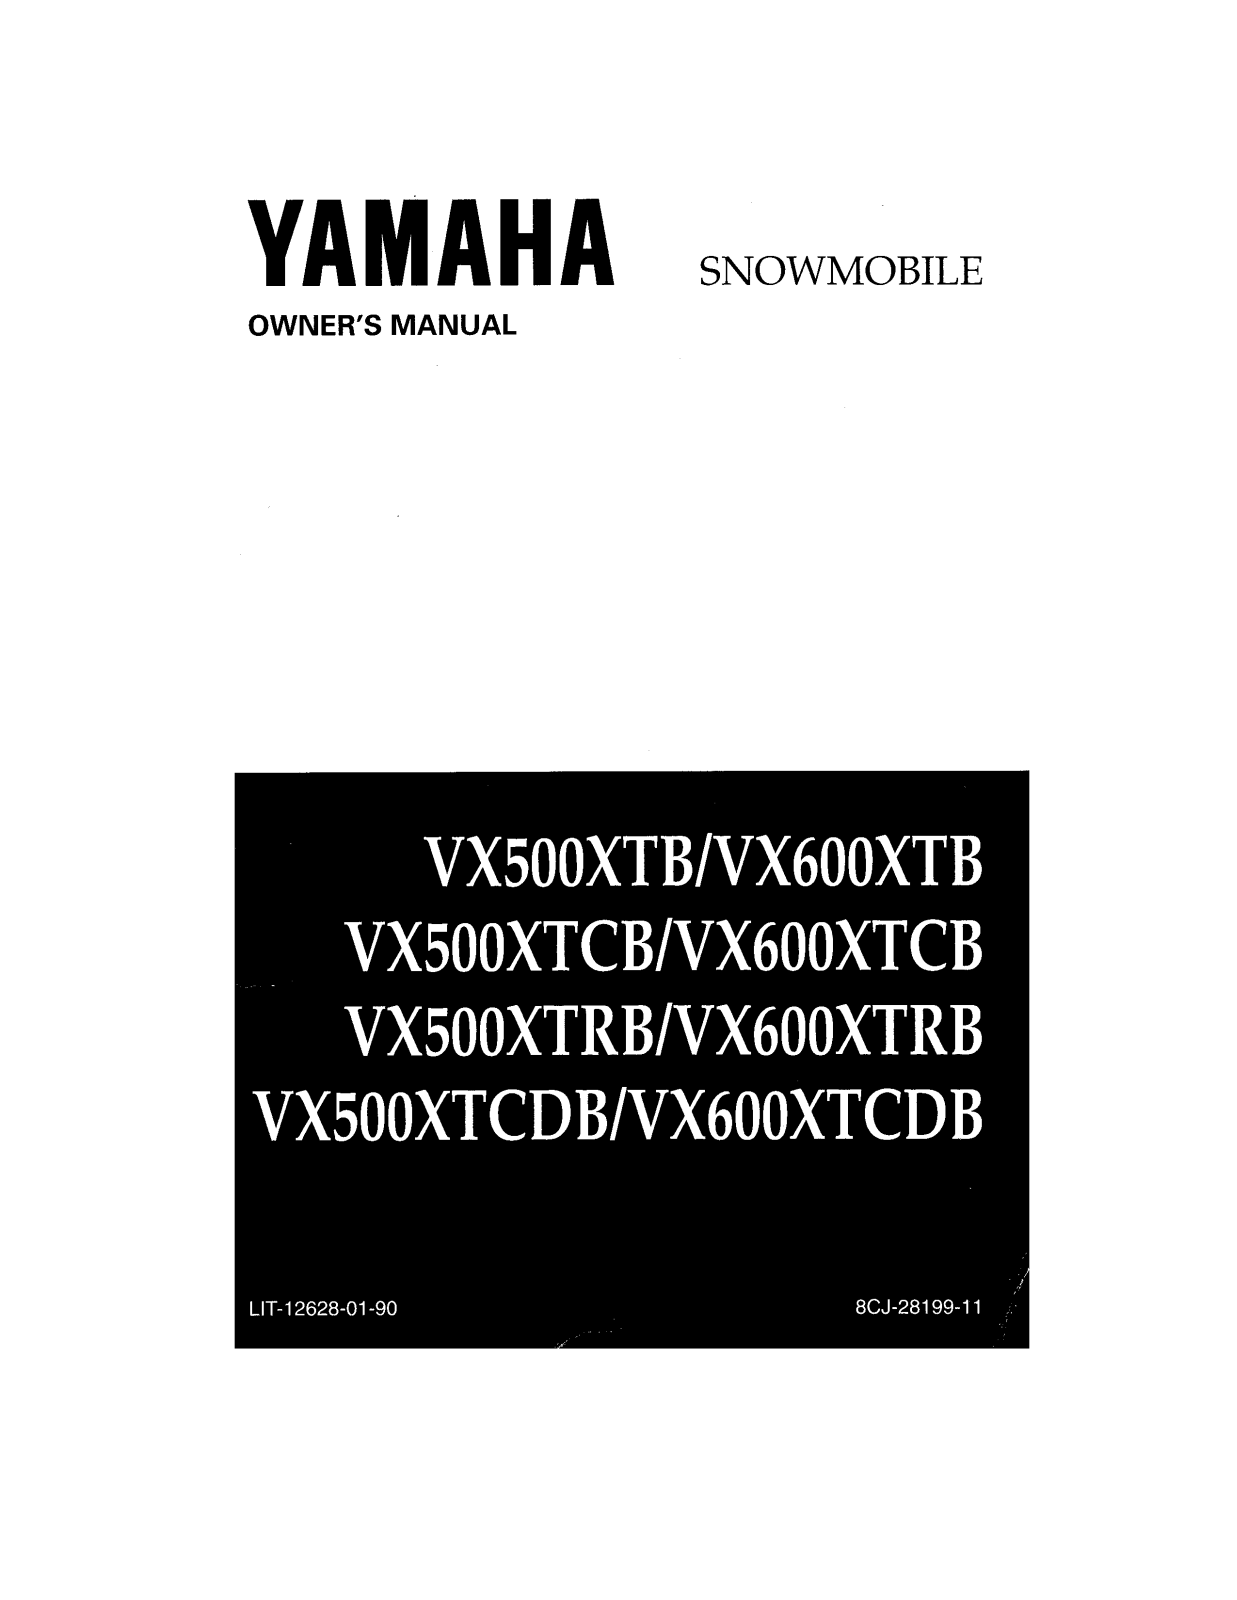 Yamaha VMAX 600 XTC, VMAX 600 XTR, VMAX 600 SX, VMAX 500 XT, VMAX 500 XTC DELUXE Manual